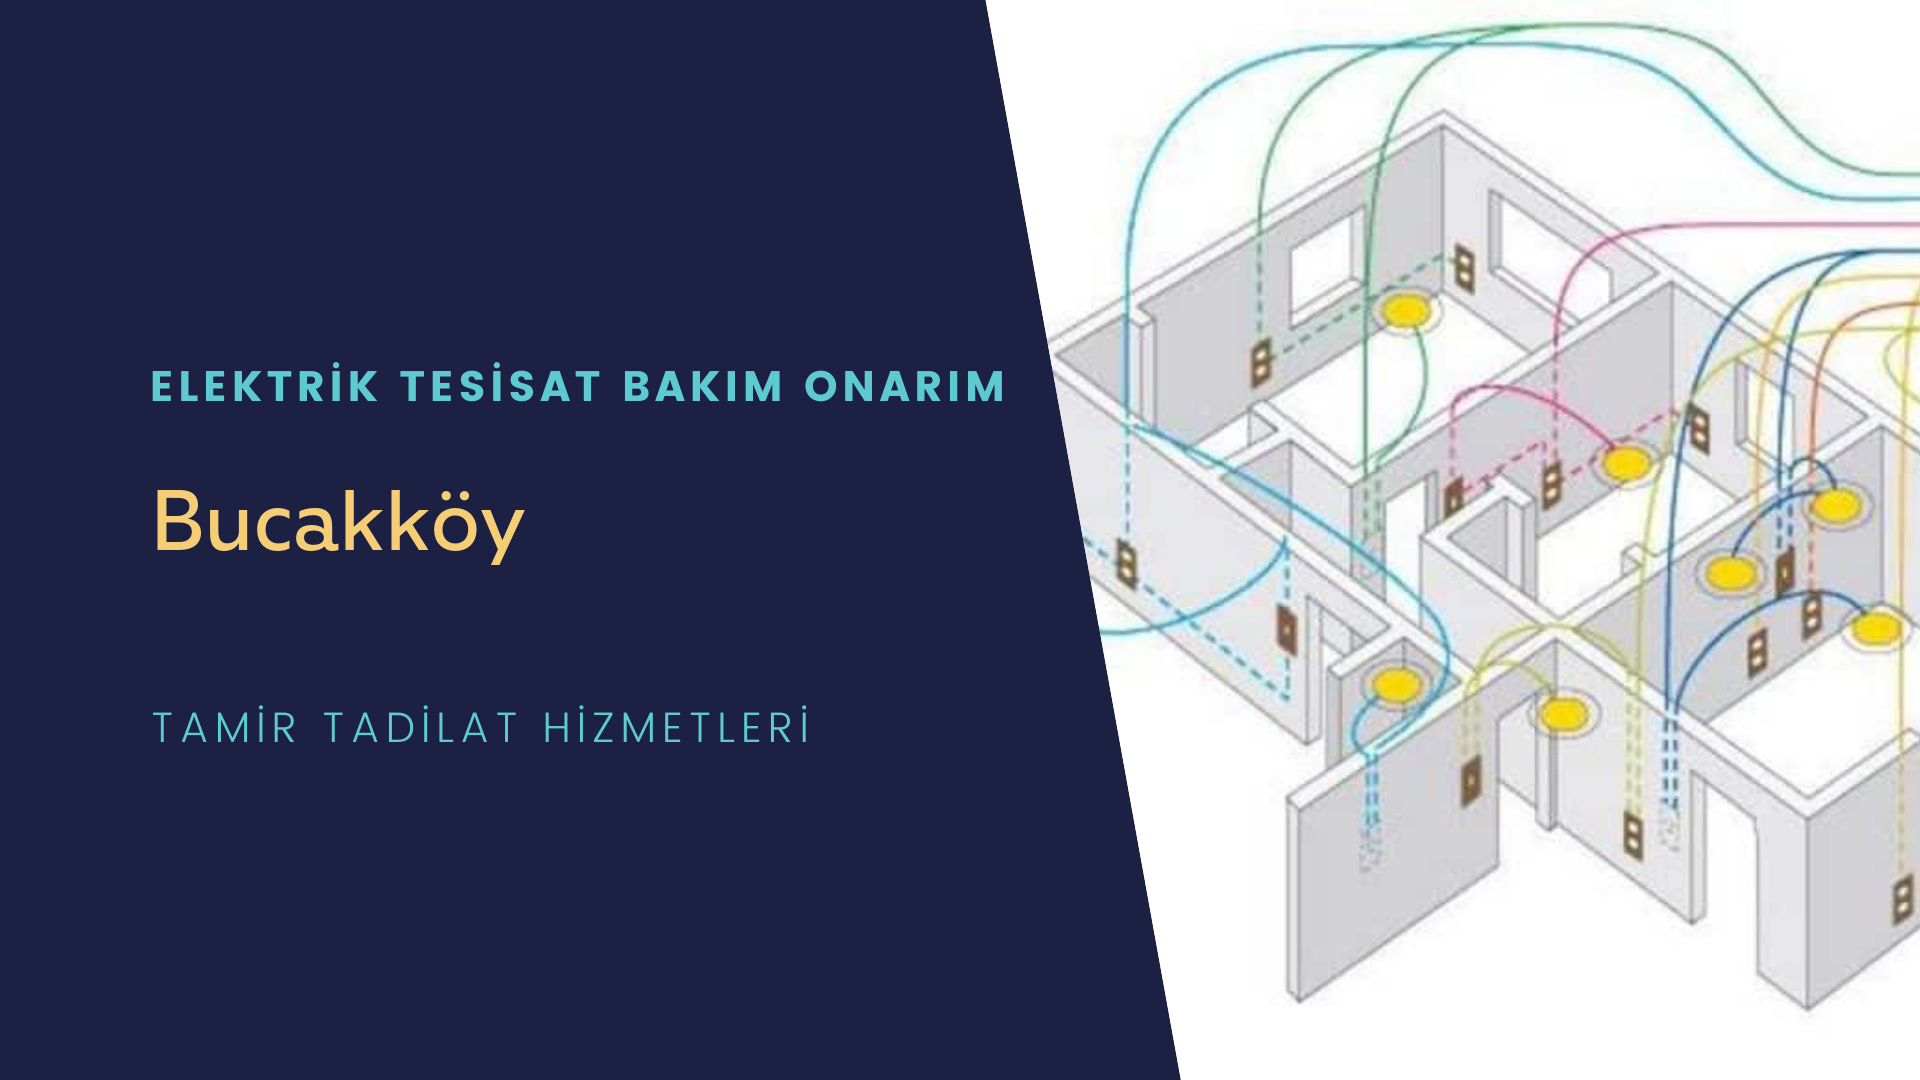 Bucakköy'de elektrik tesisatı ustalarımı arıyorsunuz doğru adrestenizi Bucakköy elektrik tesisatı ustalarımız 7/24 sizlere hizmet vermekten mutluluk duyar.